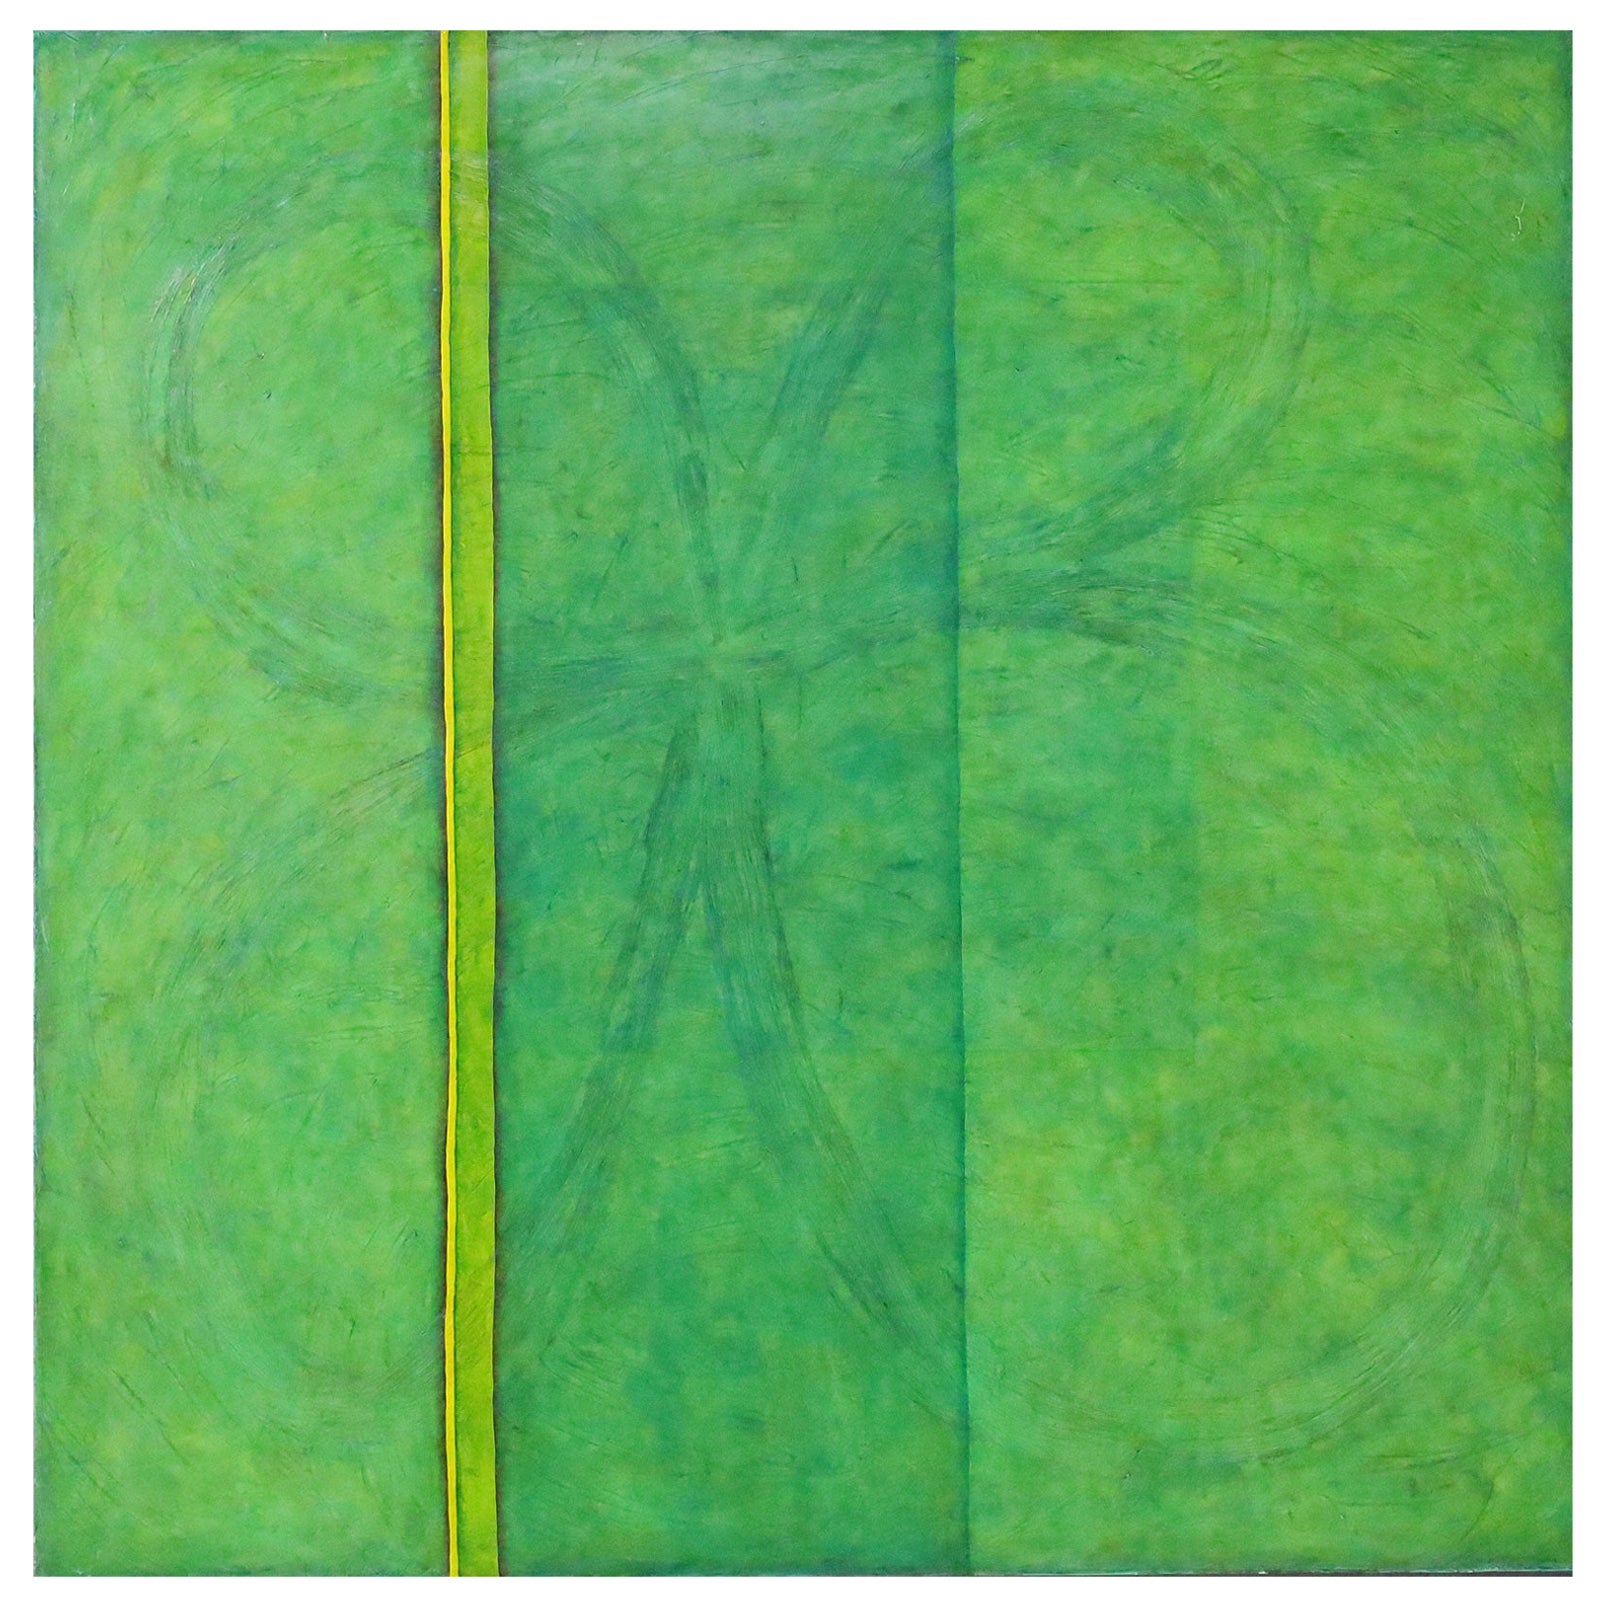 Maria Olivieri Quinn, Oil on Canvas, "Knot Finite", 2003